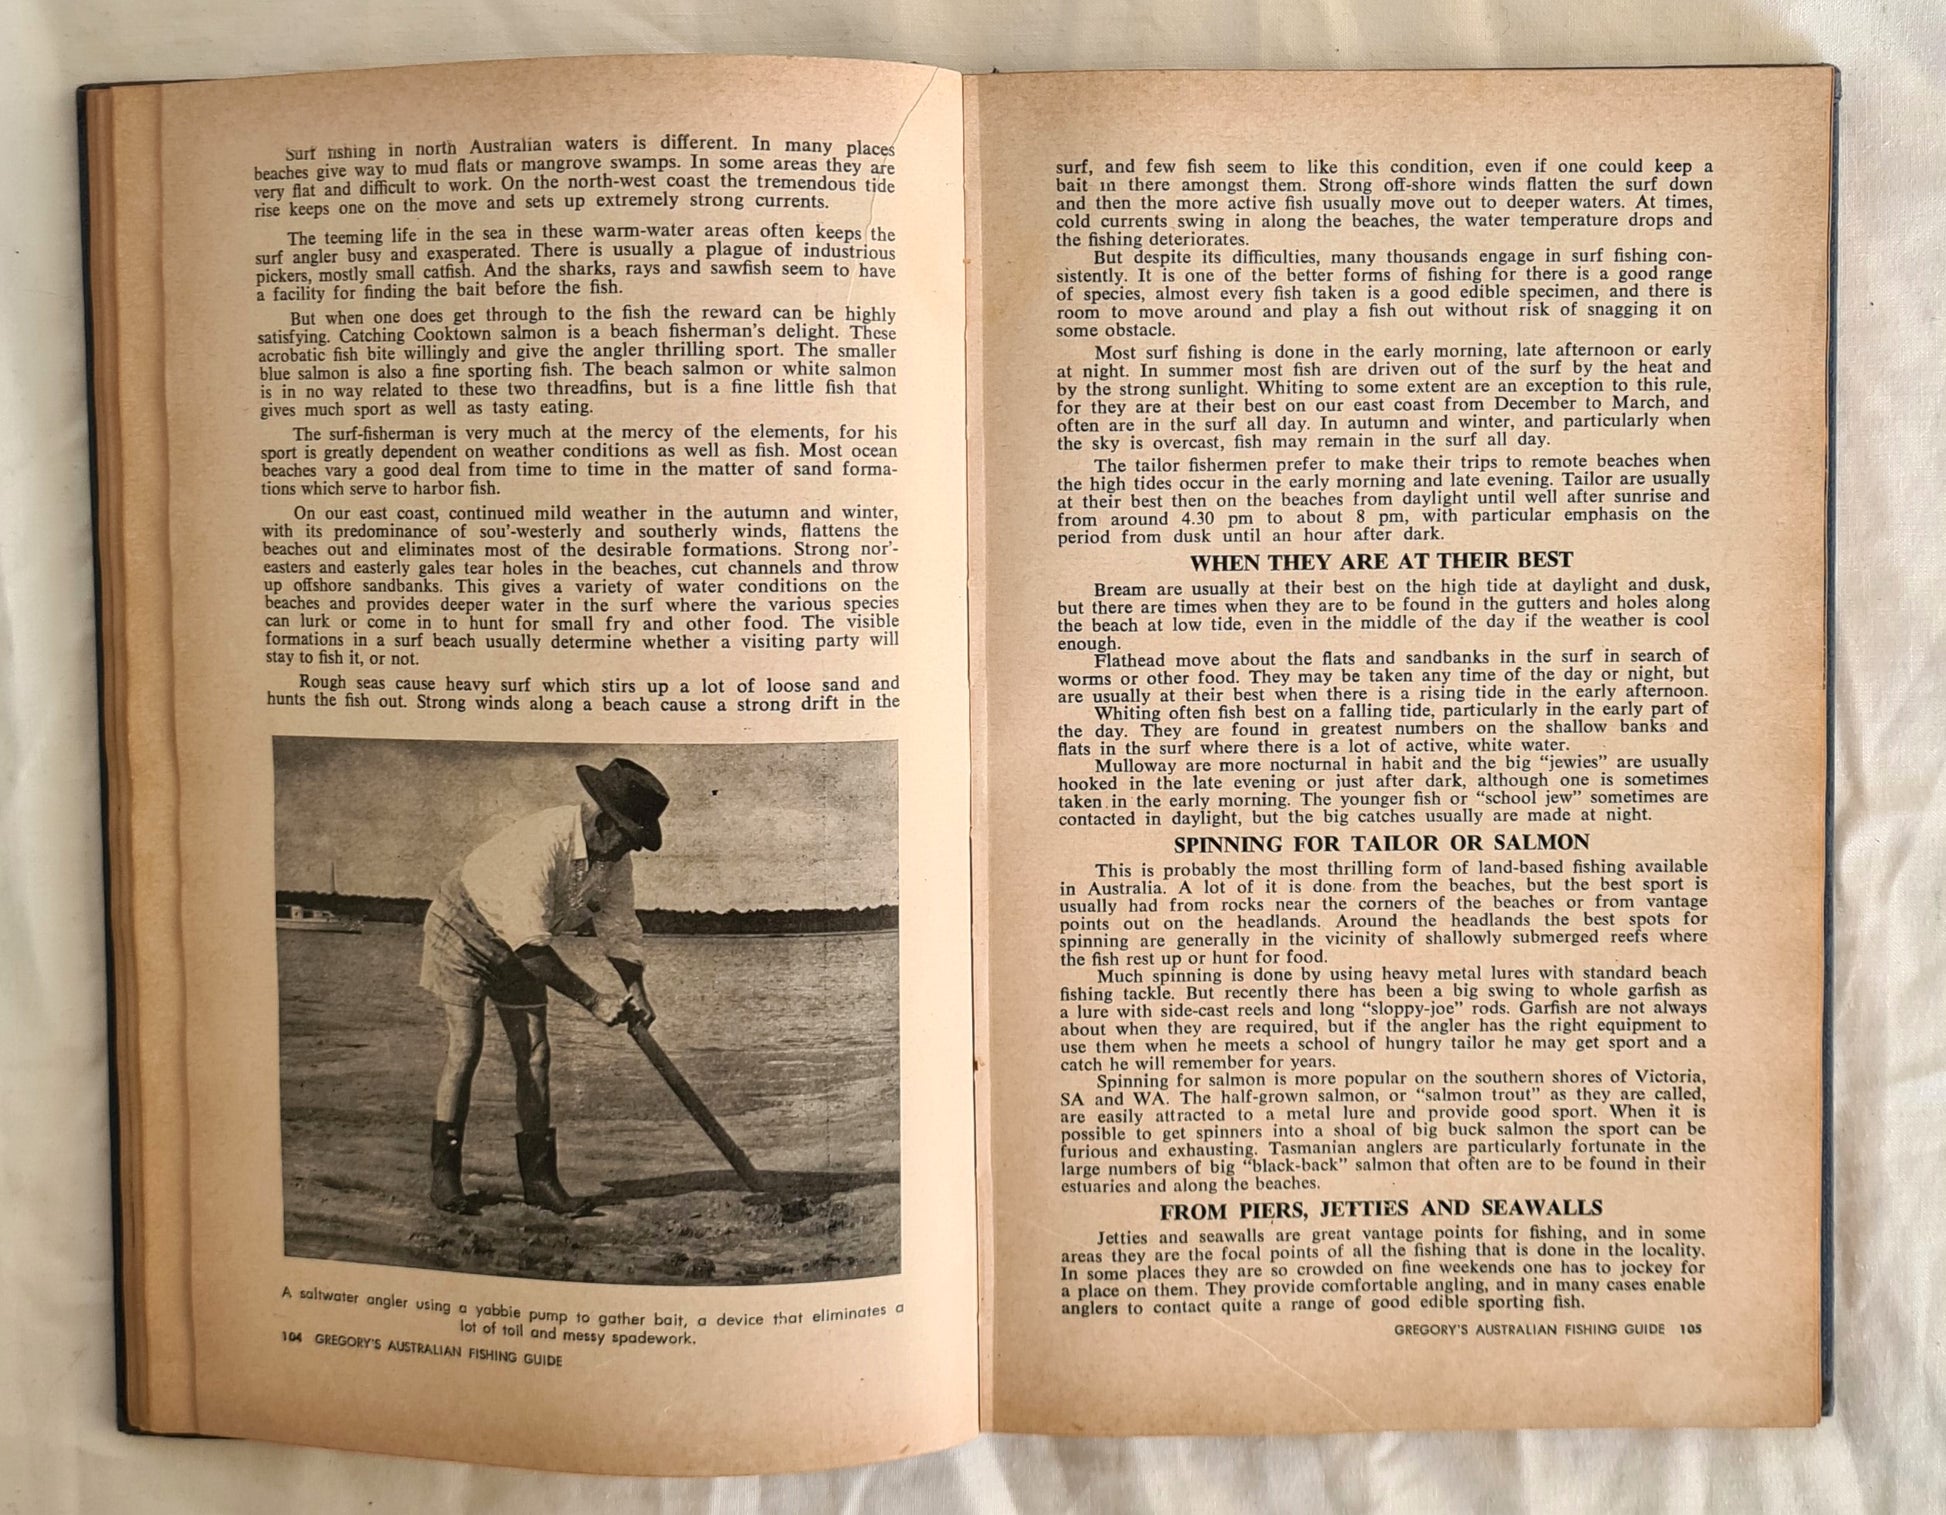 Jack Pollard's Fishing Australia [used book]